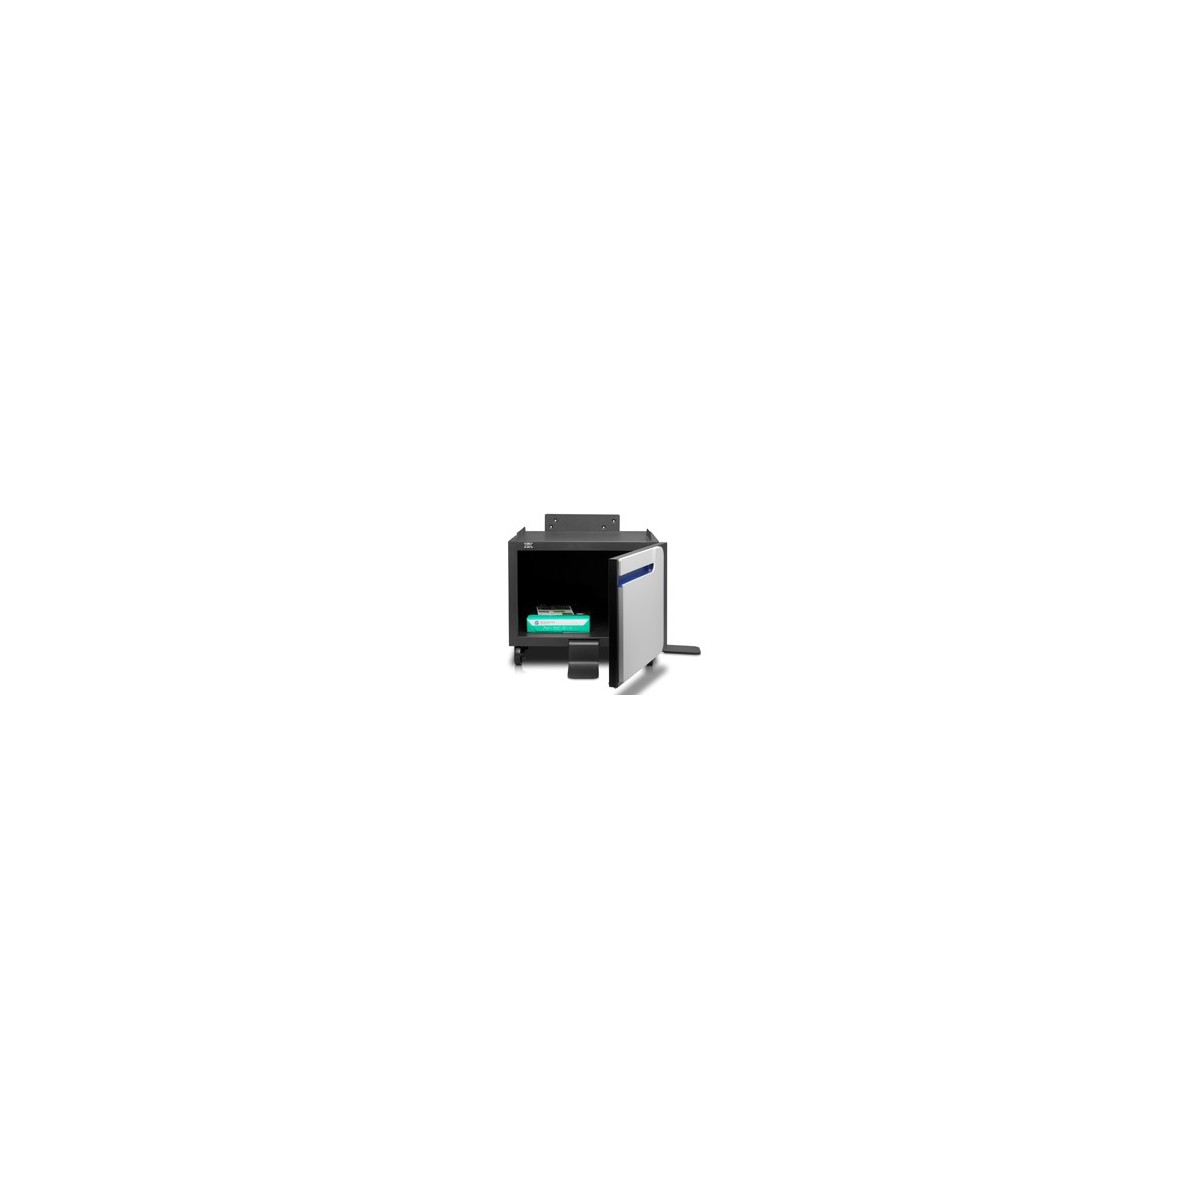 HP LaserJet 500 color Series Printer Cabinet - Grey - HP LaserJet 500 - Business - Enterprise - 678.2 mm - 772.2 mm - 426.7 mm